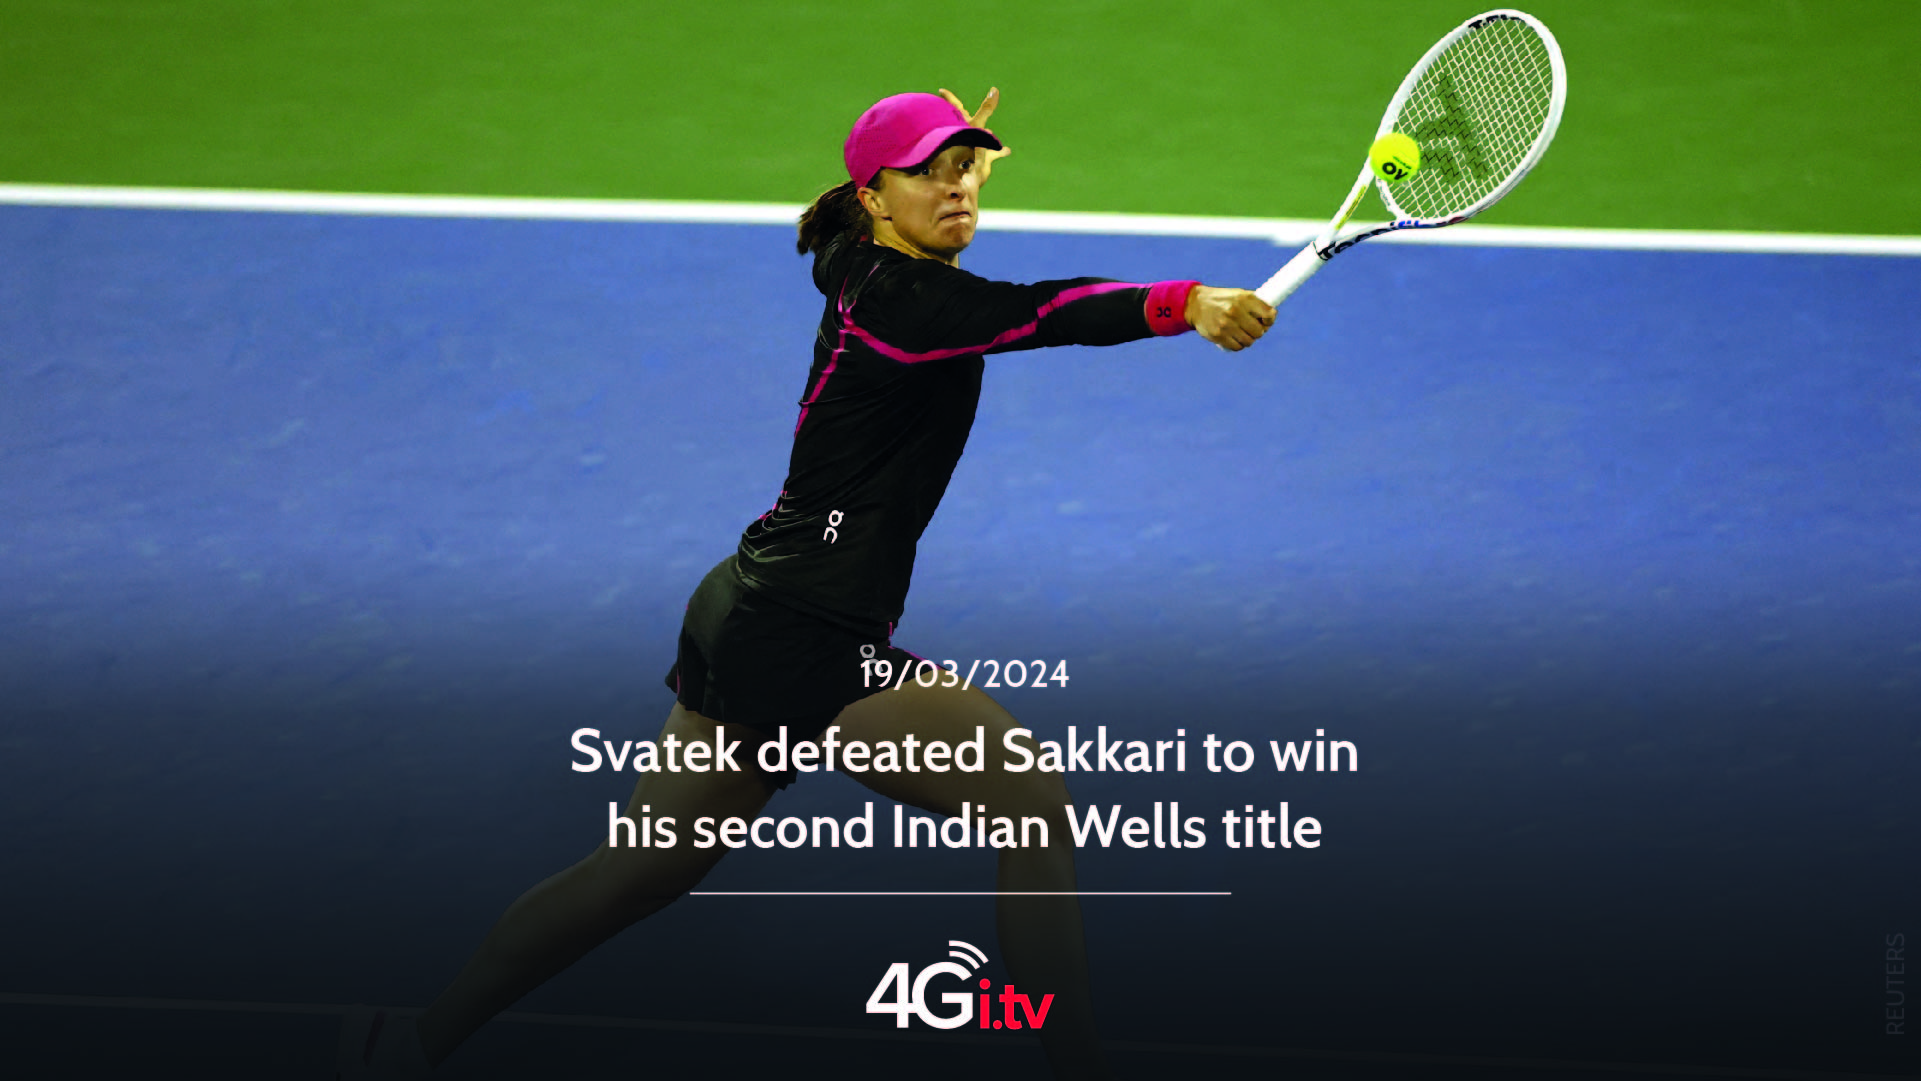 Lesen Sie mehr über den Artikel Svatek defeated Sakkari to win his second Indian Wells title